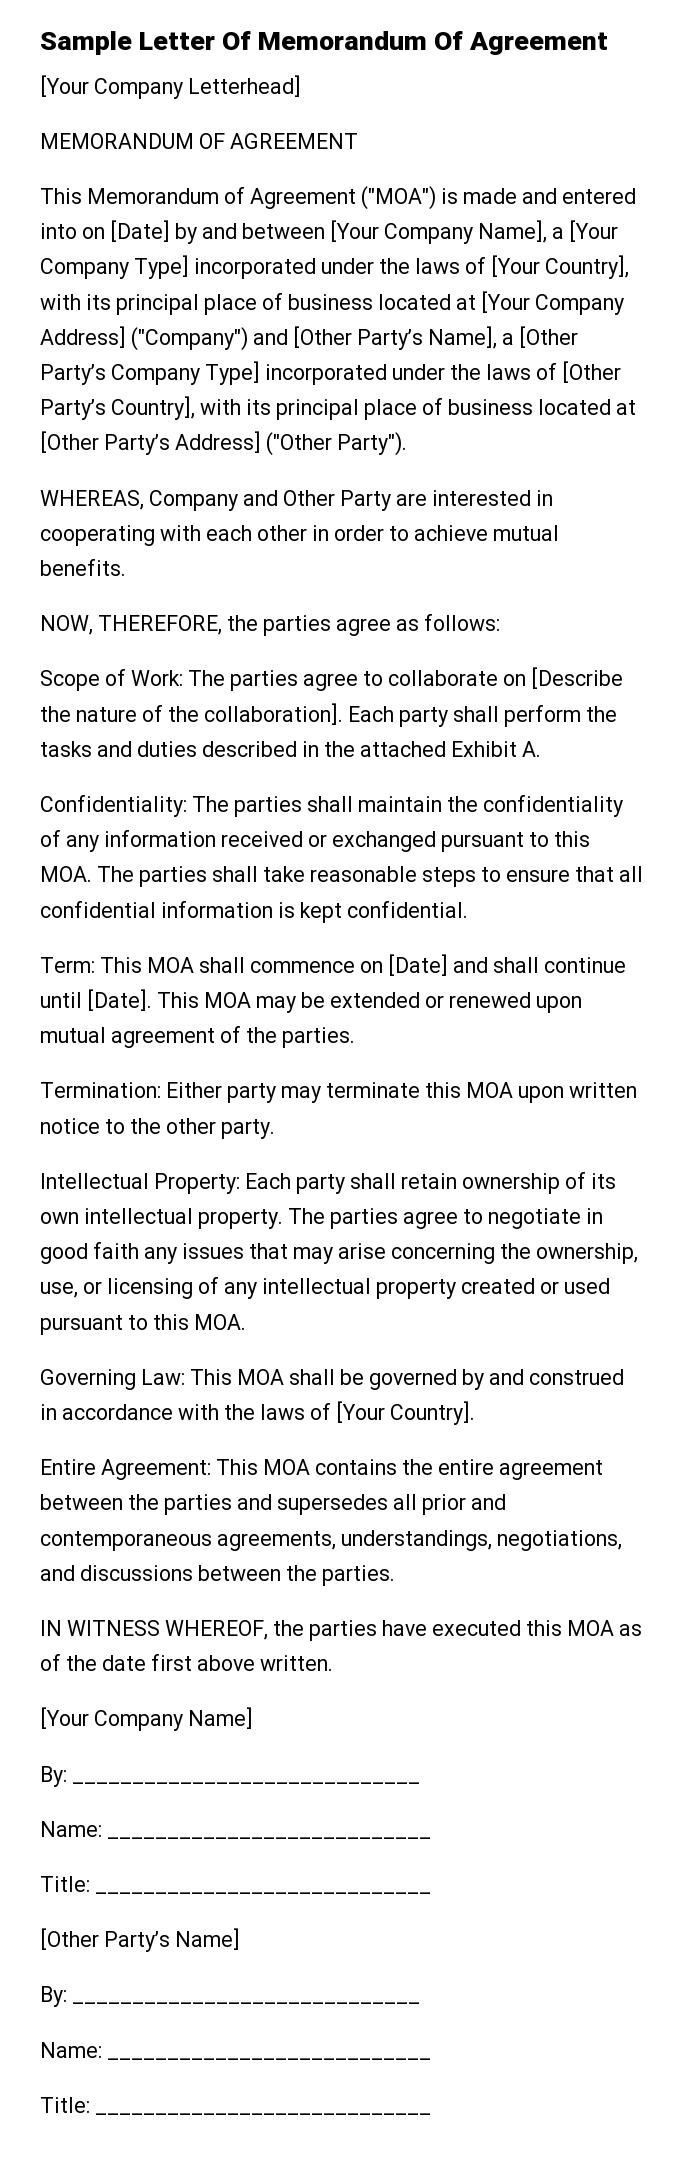 Sample Letter Of Memorandum Of Agreement